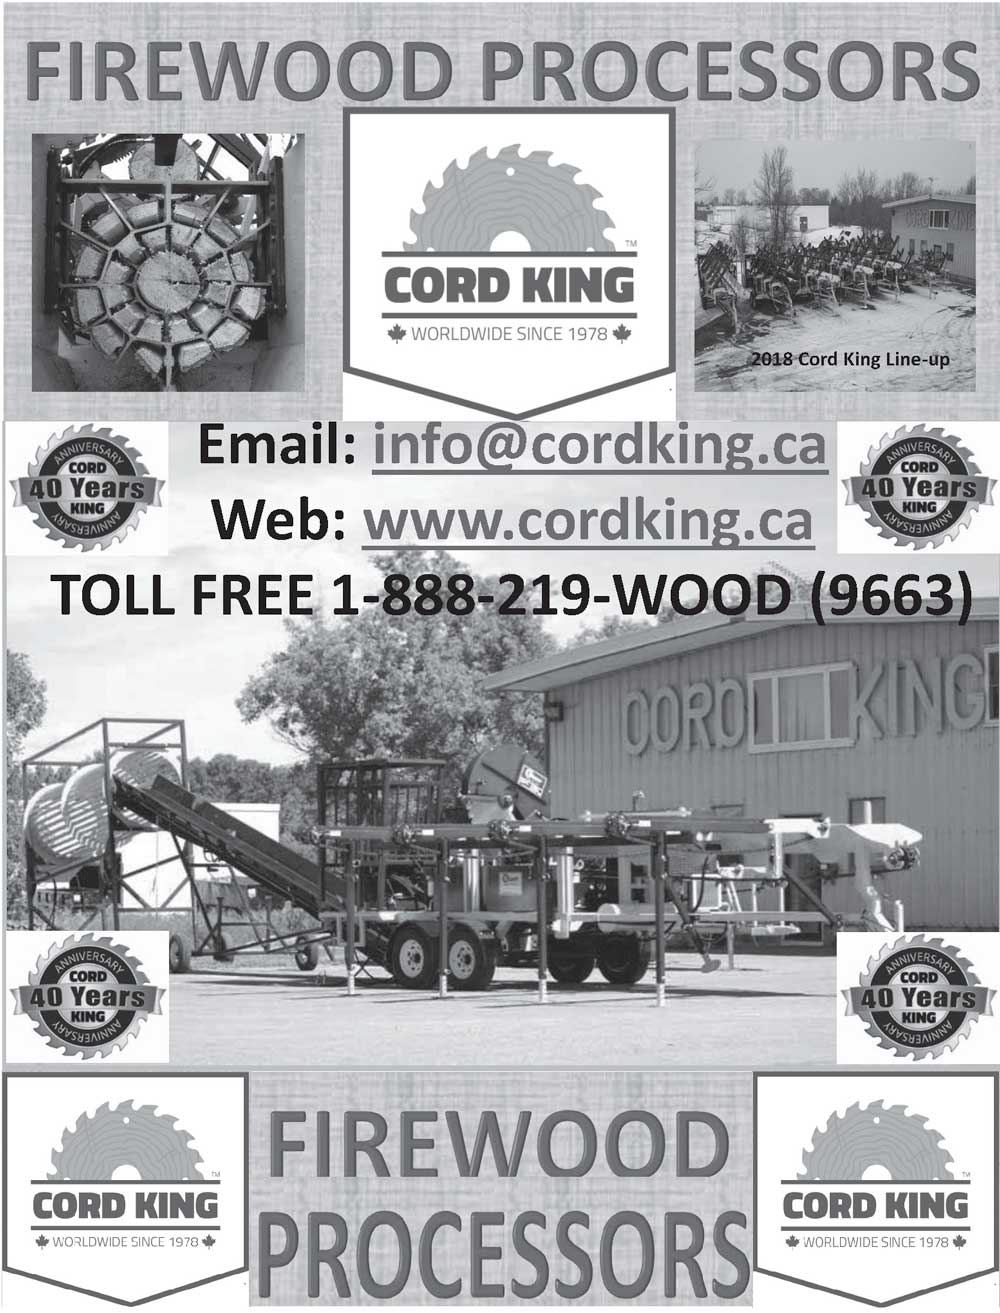 CORD KING Firewood Processors